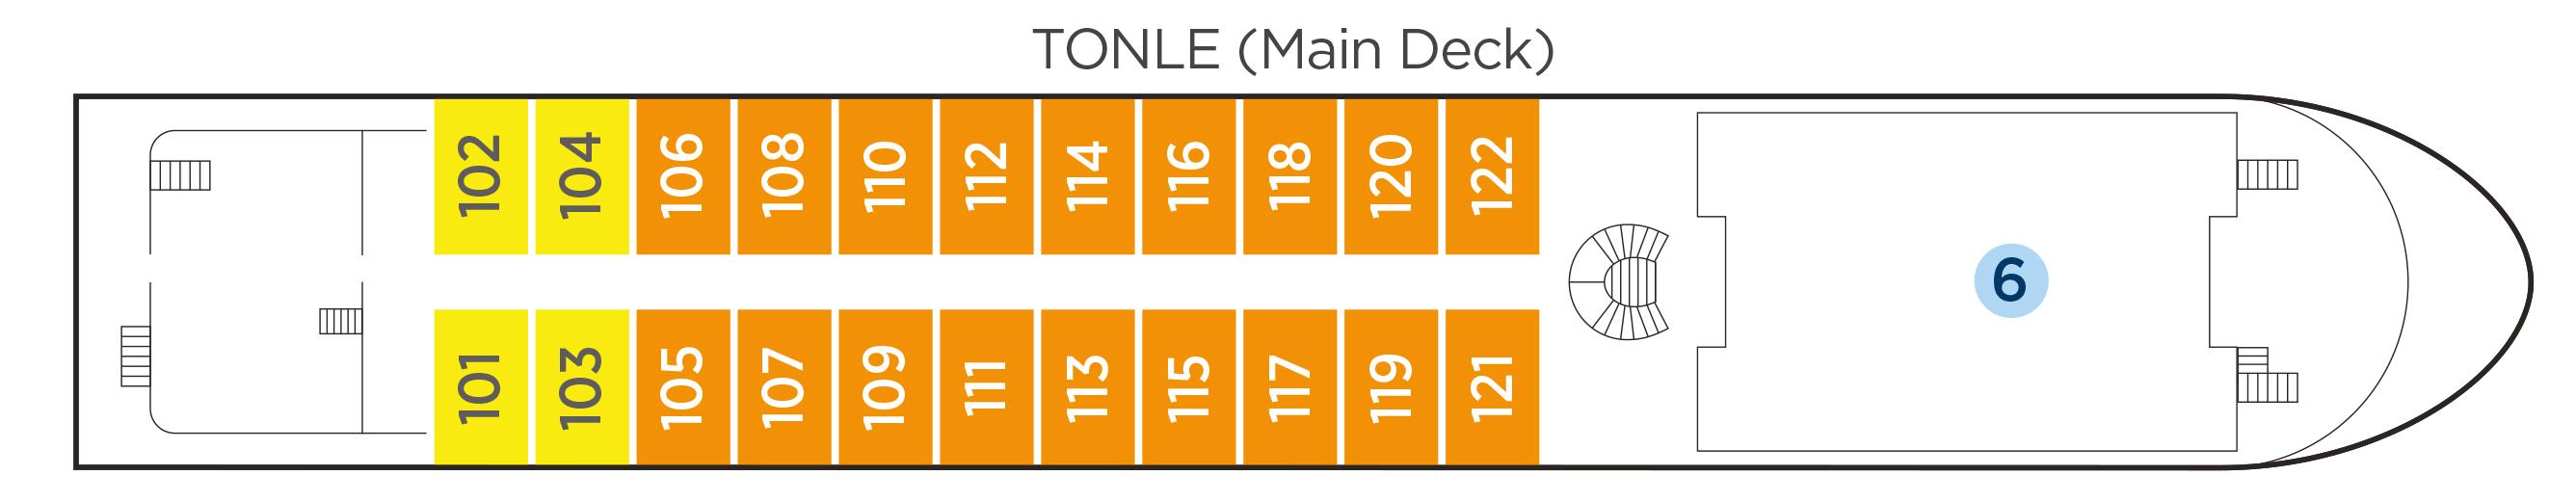 Tonle (Main Deck)